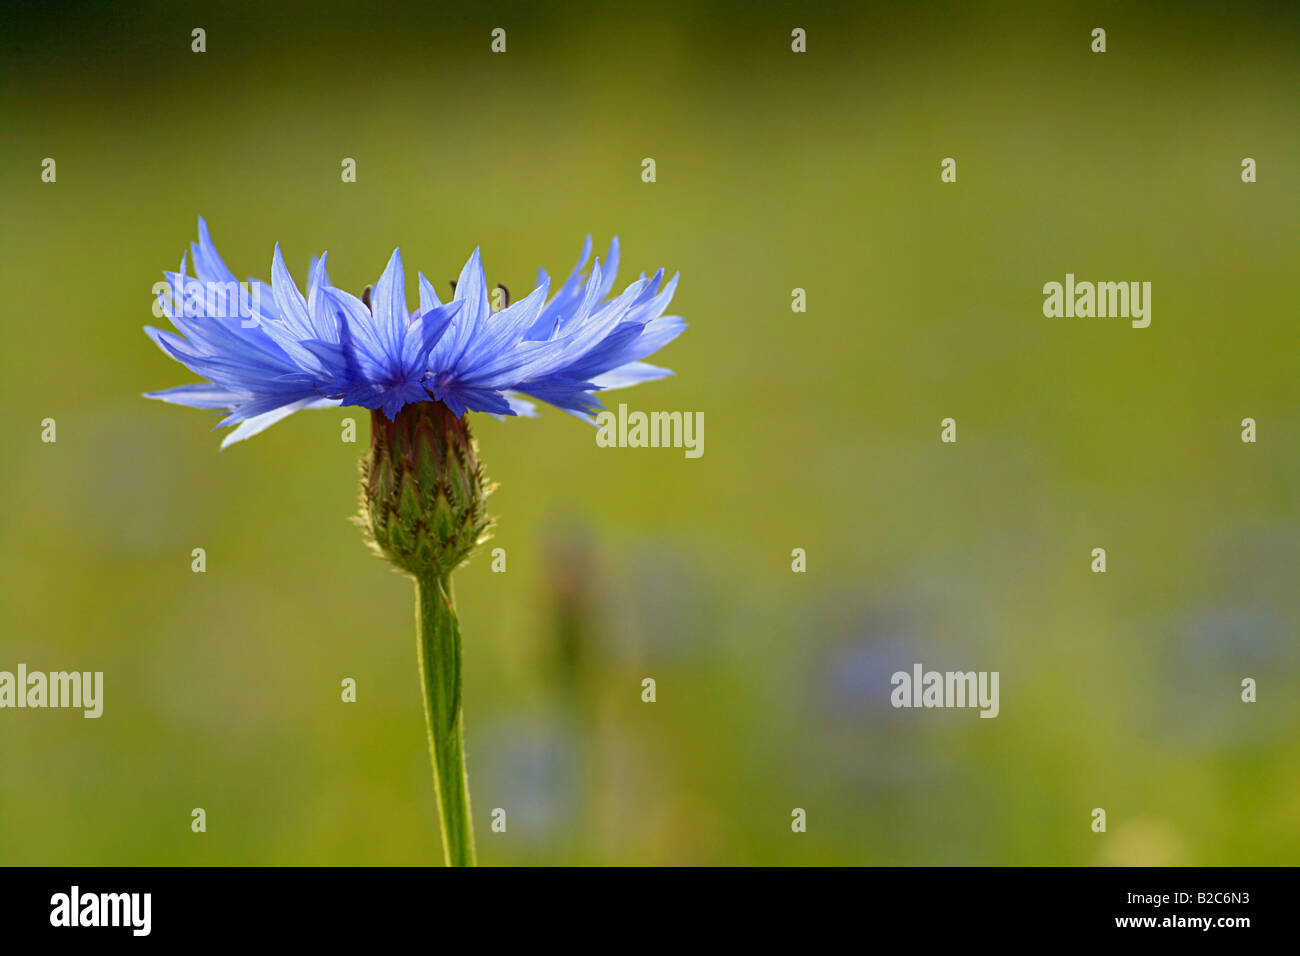 Fiore di mais immagini e fotografie stock ad alta risoluzione - Alamy